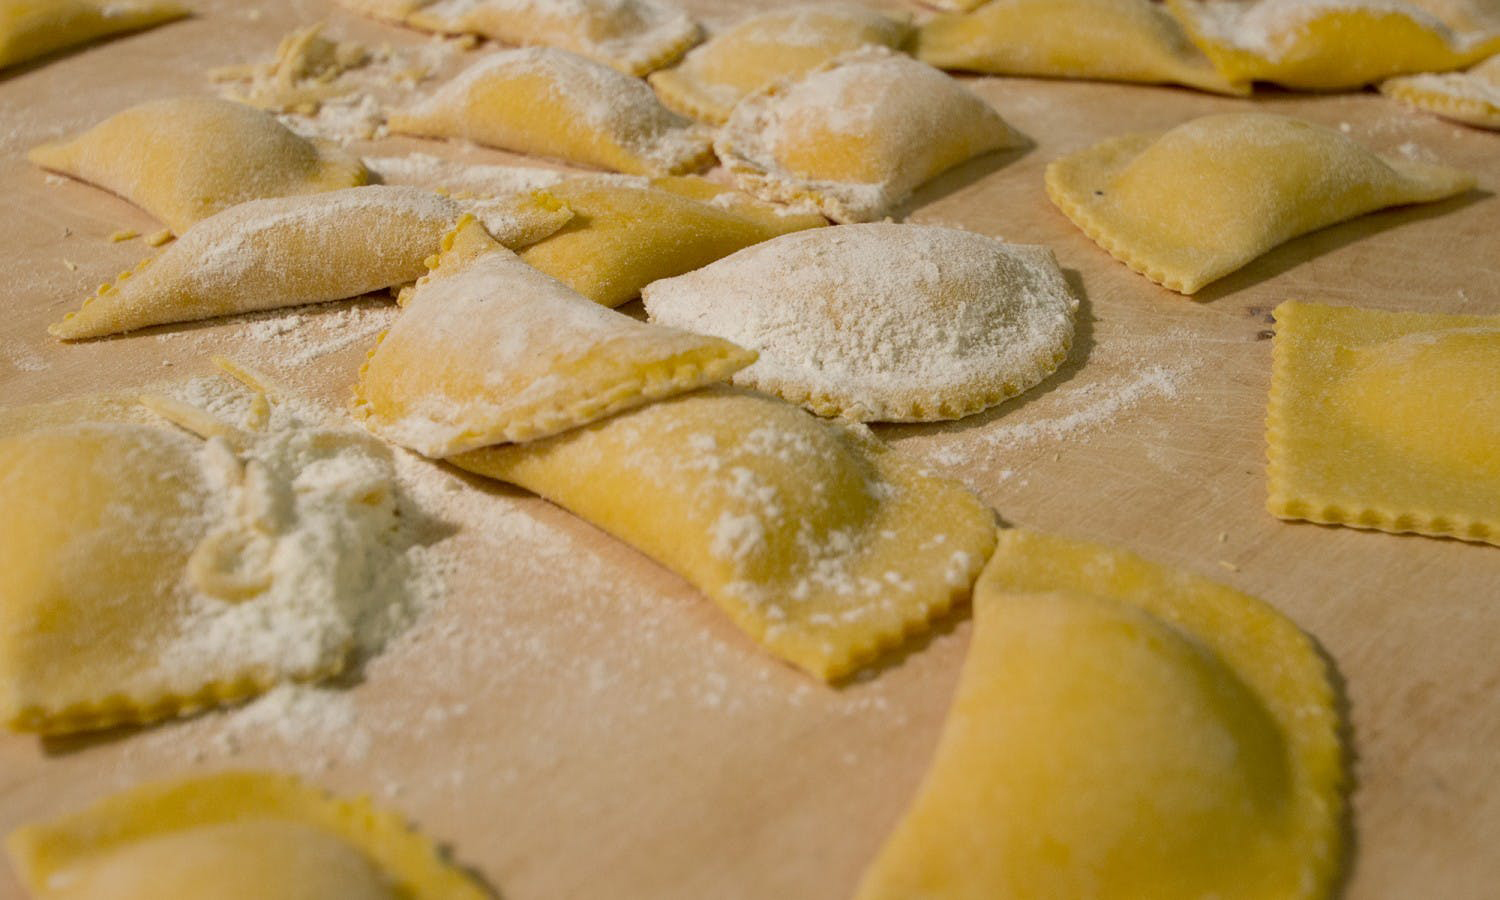 ravioli making - ITALIANTASTY è il Marketplace dei prodotti alimentari ...